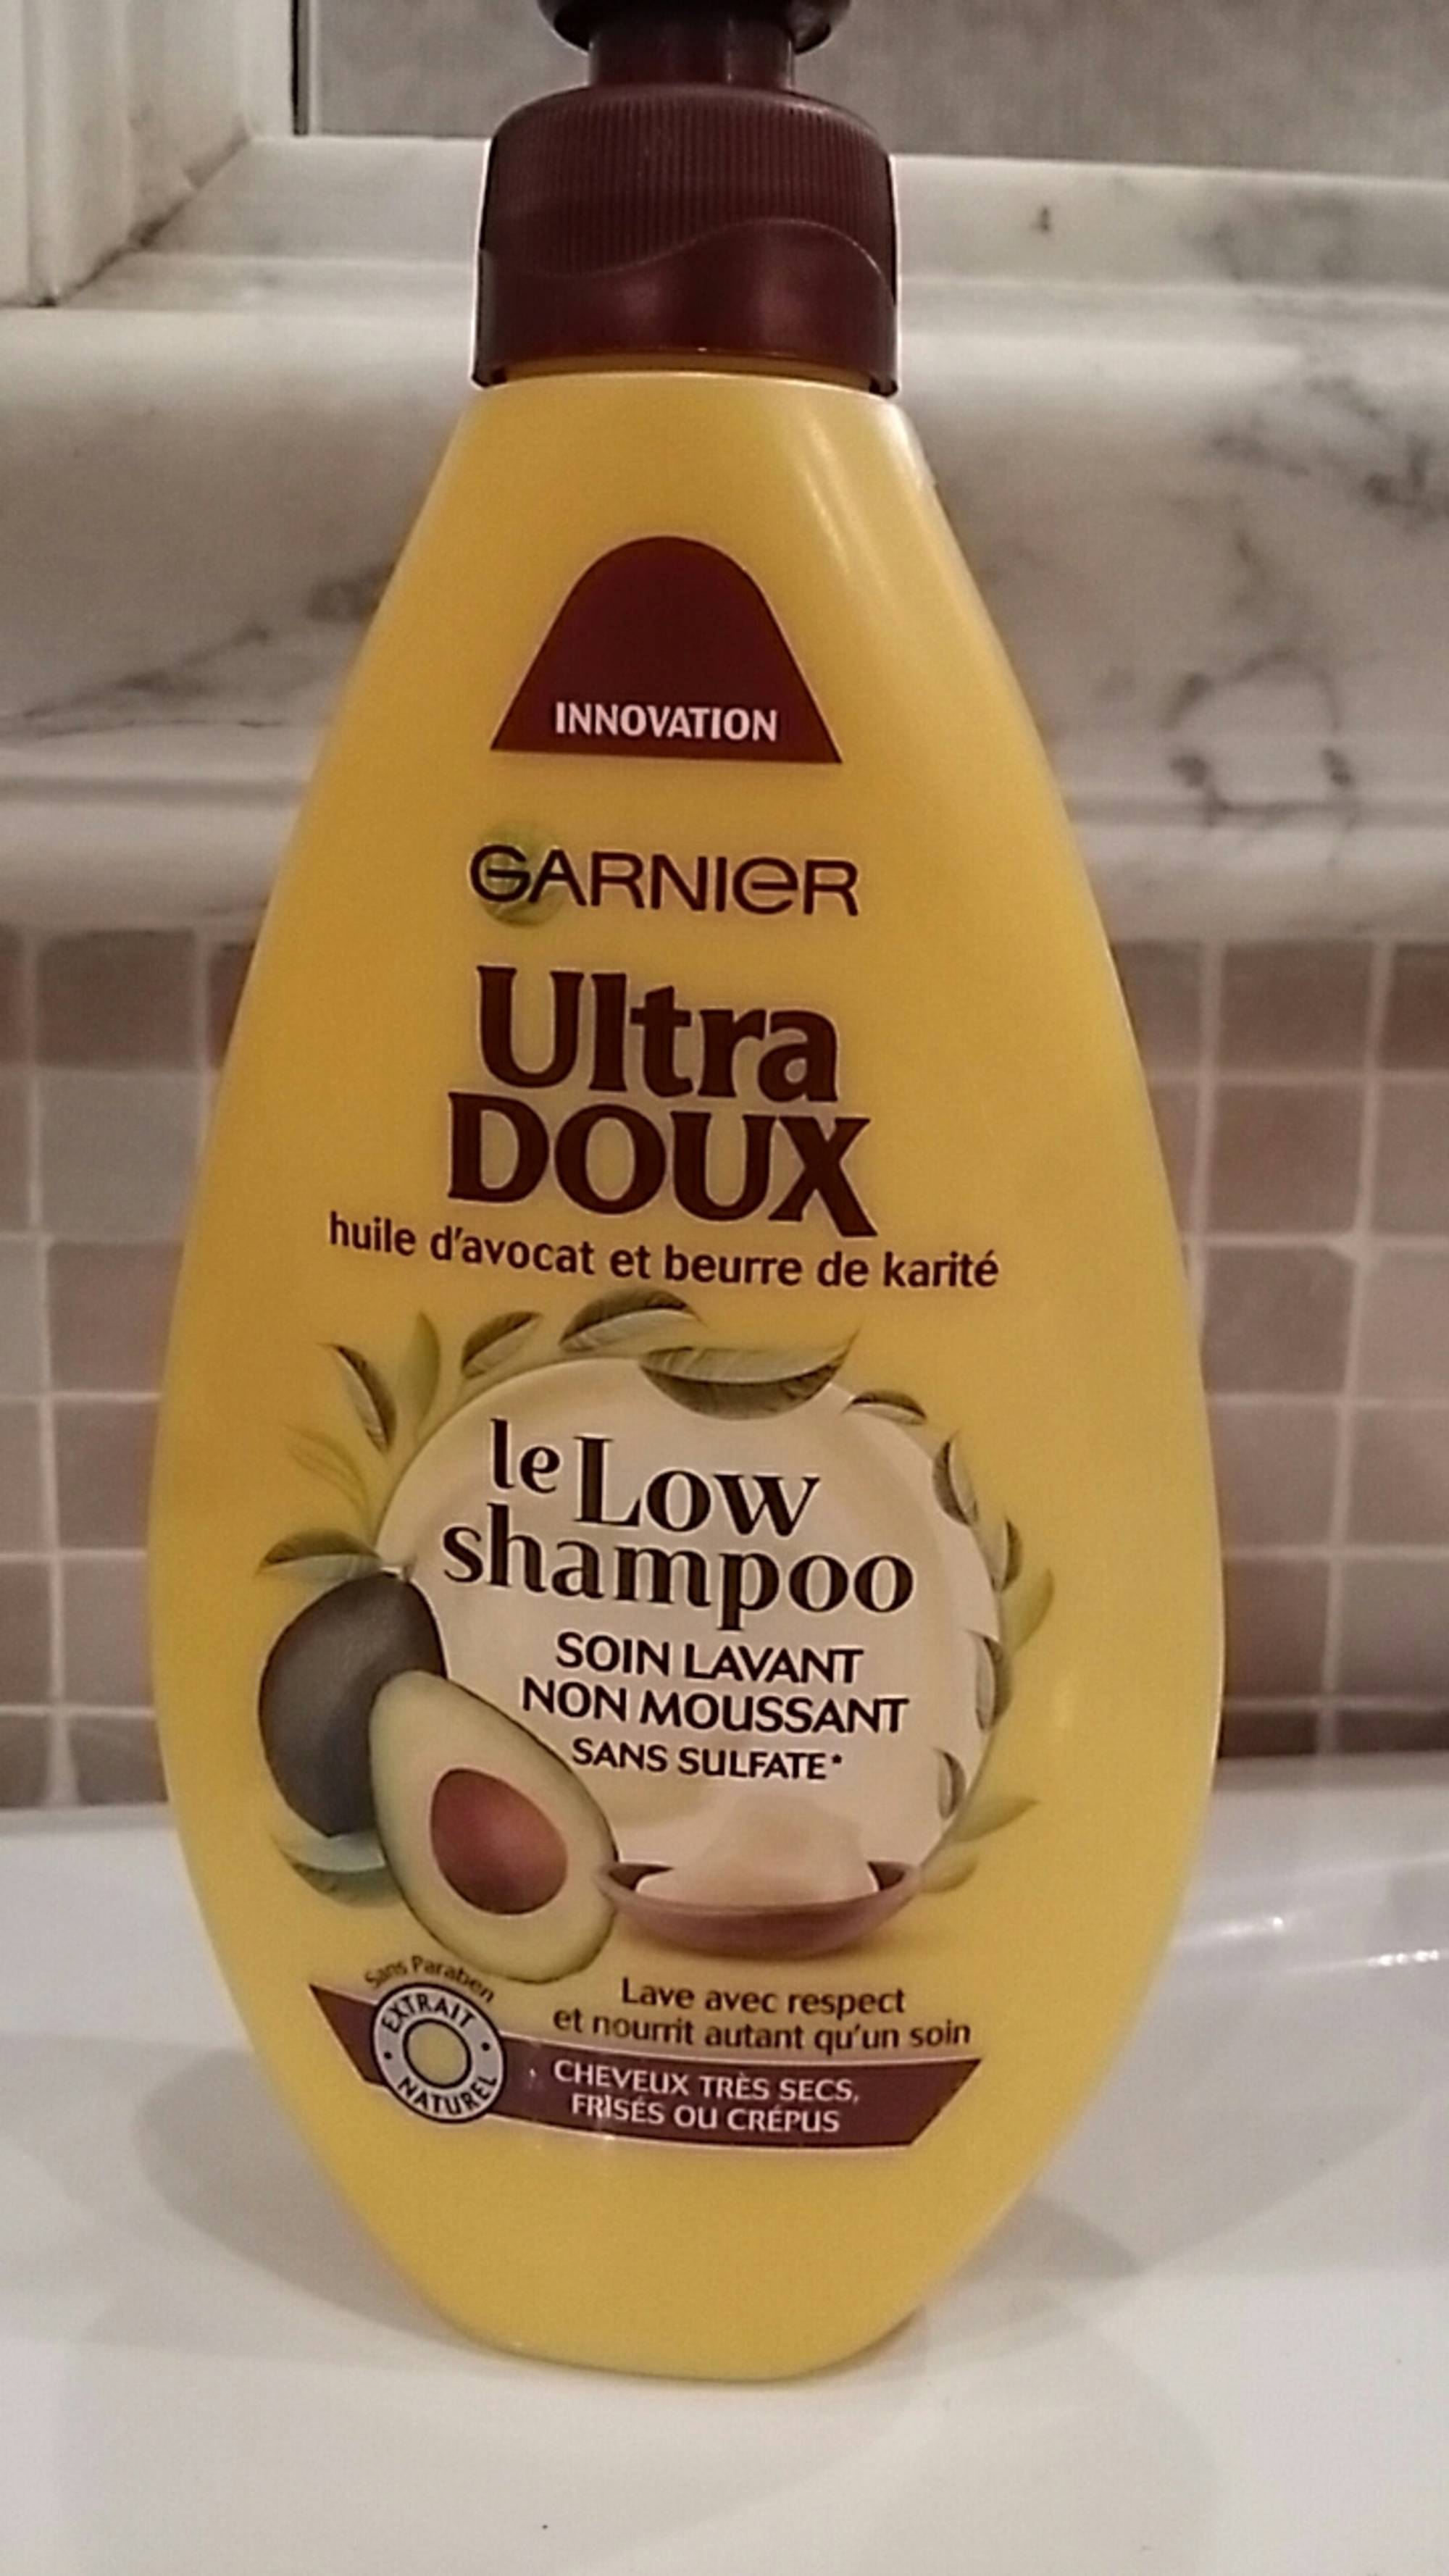 GARNIER - Ultra doux - Le low shampoo - Shampooing soin lavant non moussant